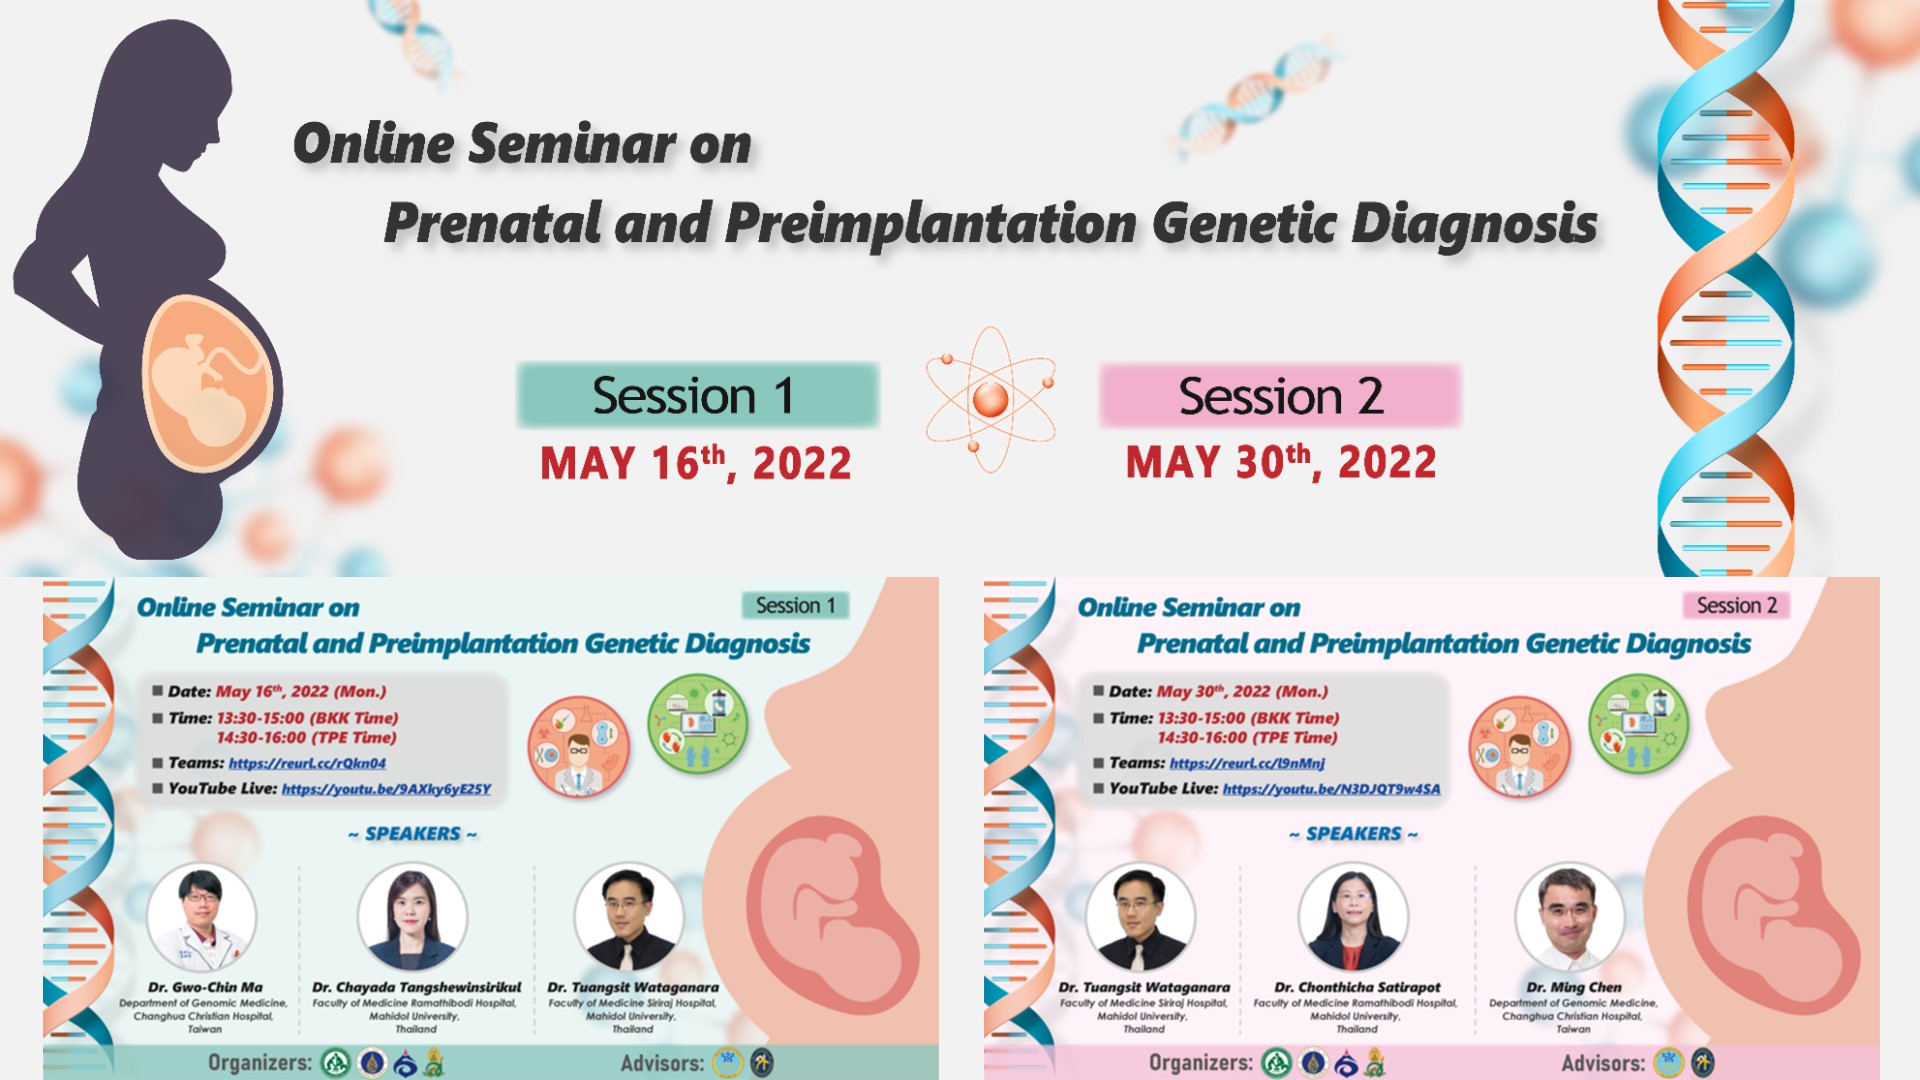 Online Seminar “Prenatal & Preimplantation Genetic Diagnosis”